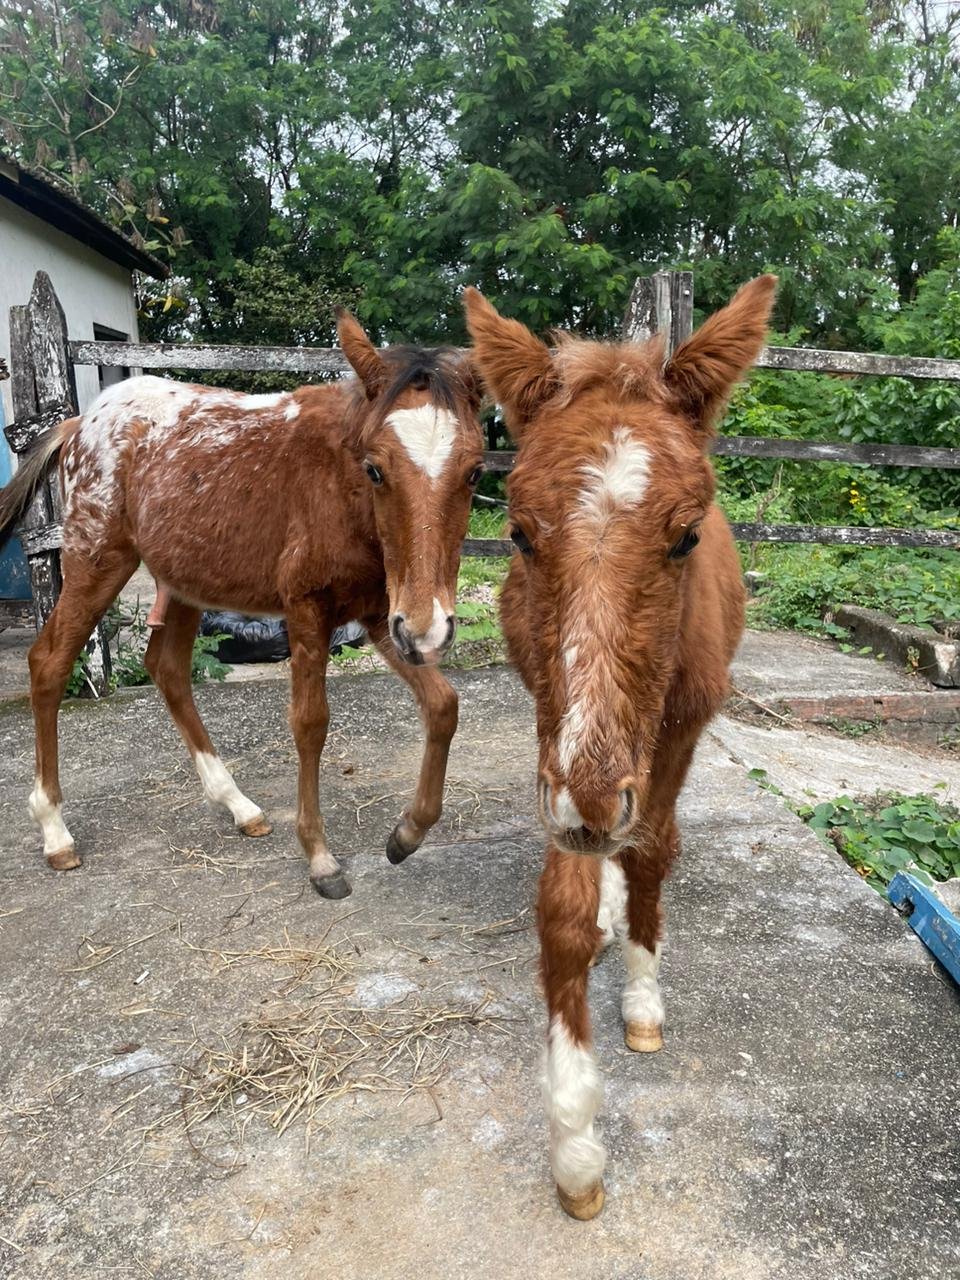 Quatro cavalos vítimas de maus-tratos ganham nova chance em campanha de adoção